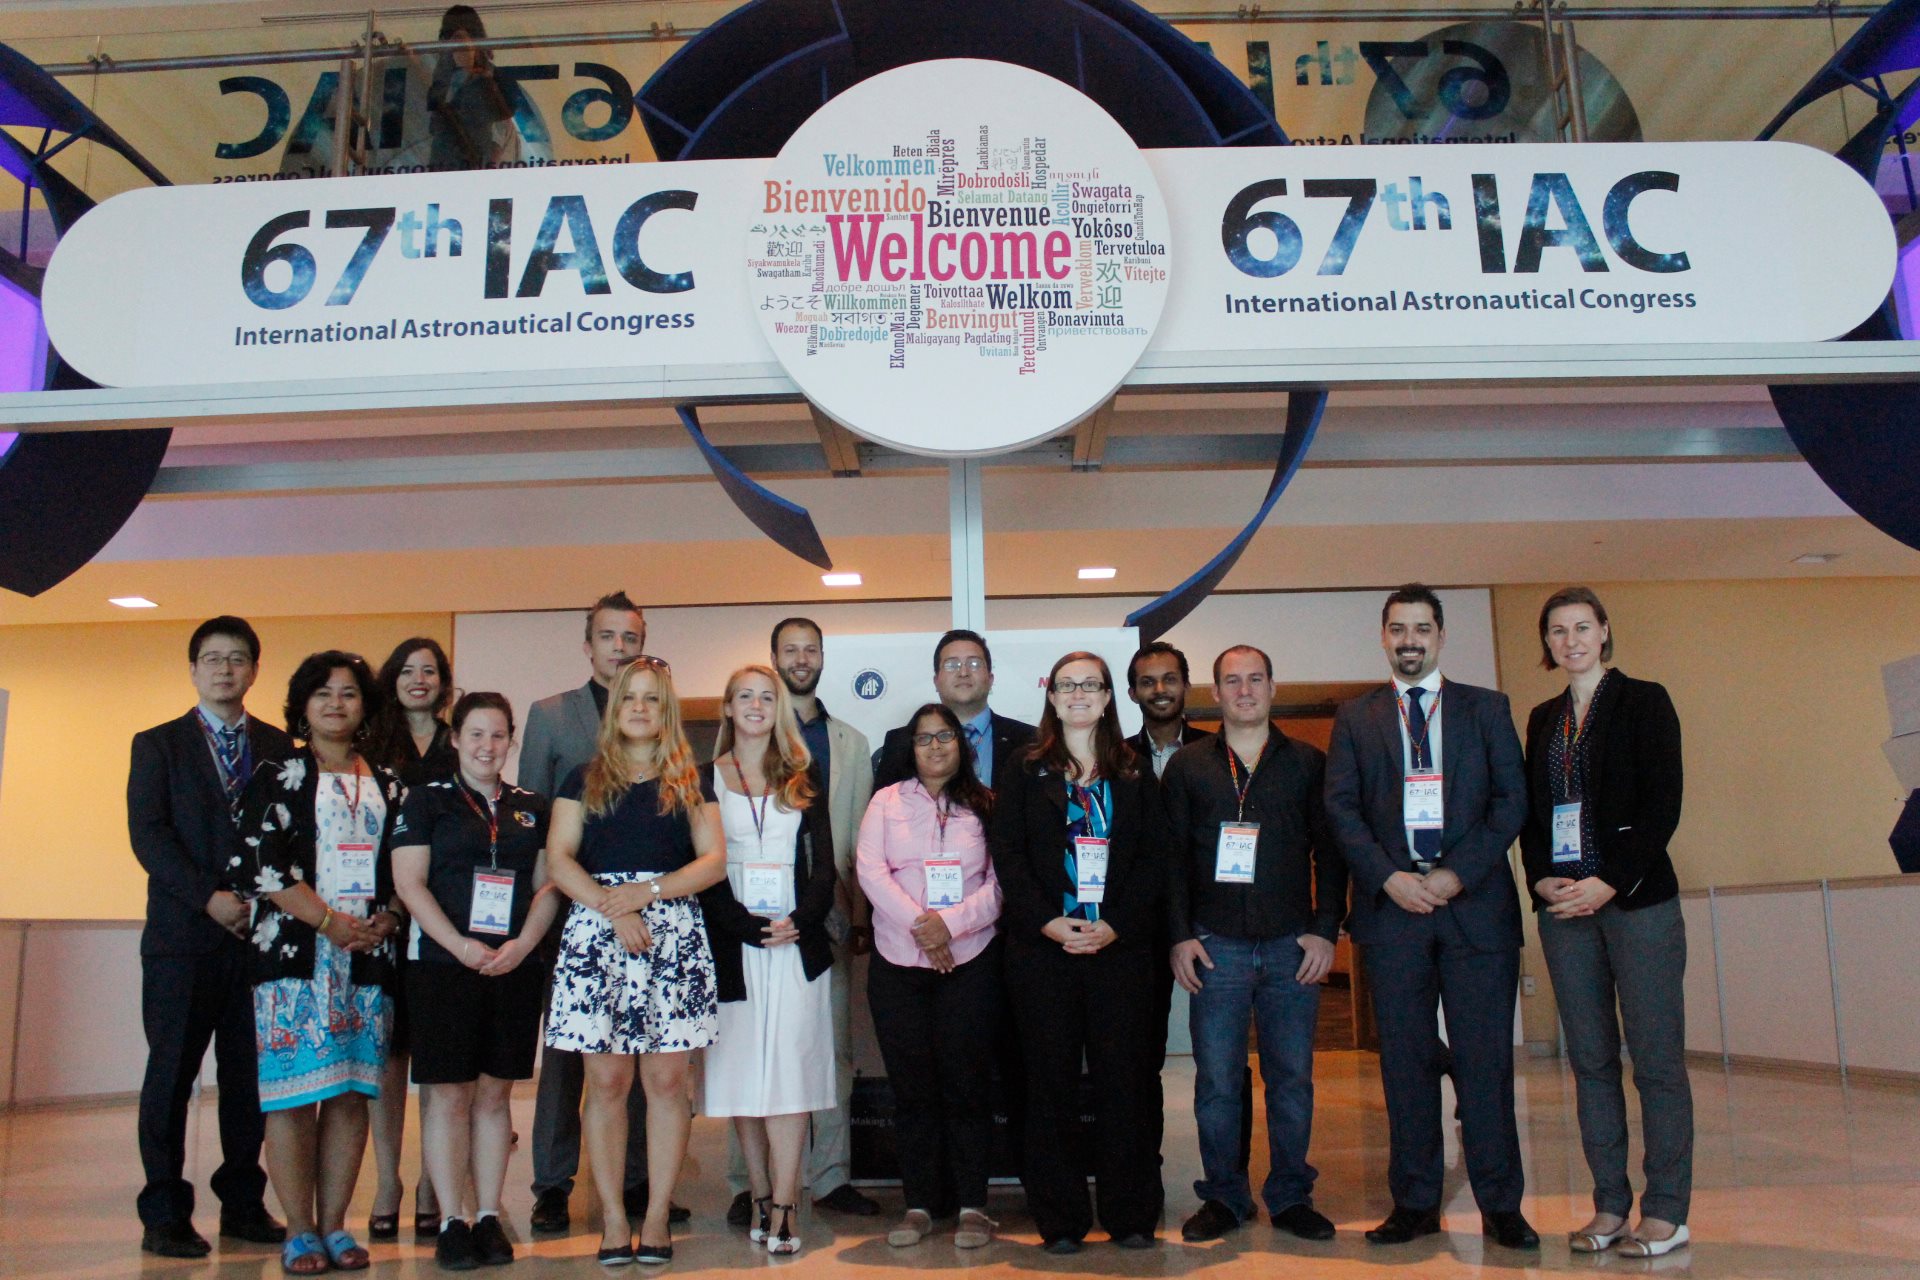 Obr.1: Držitelia prestížneho Emerging Space Leaders (ESL) grantu na konferencii IAC 2016 v Mexiku